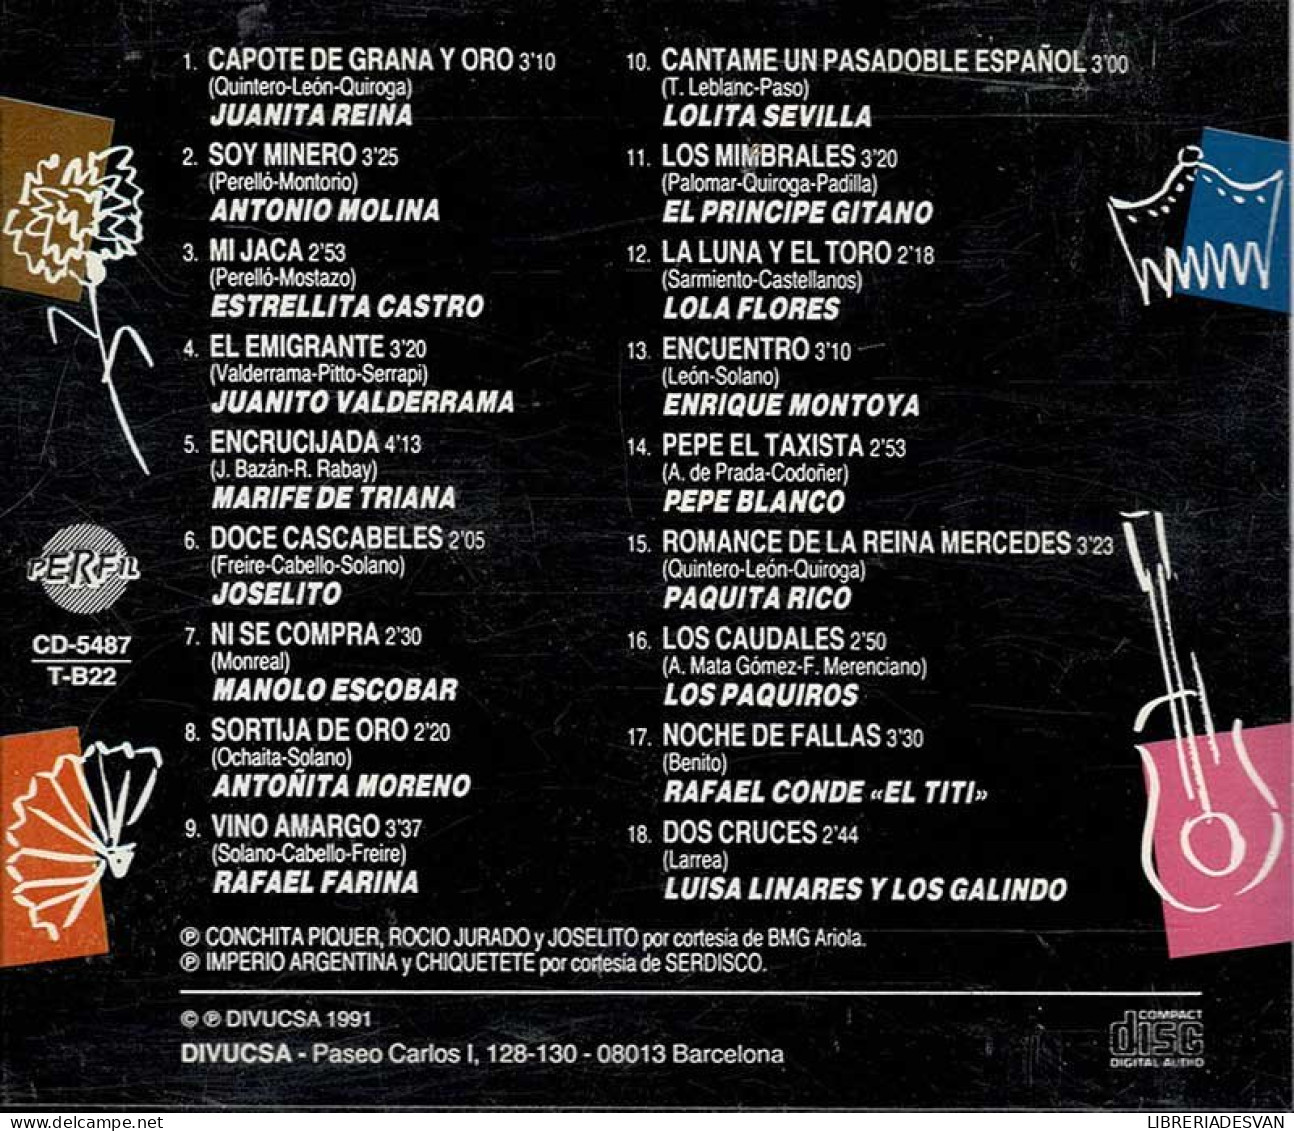 50 Coplas Inolvidables Vol. 3. CD - Sonstige - Spanische Musik